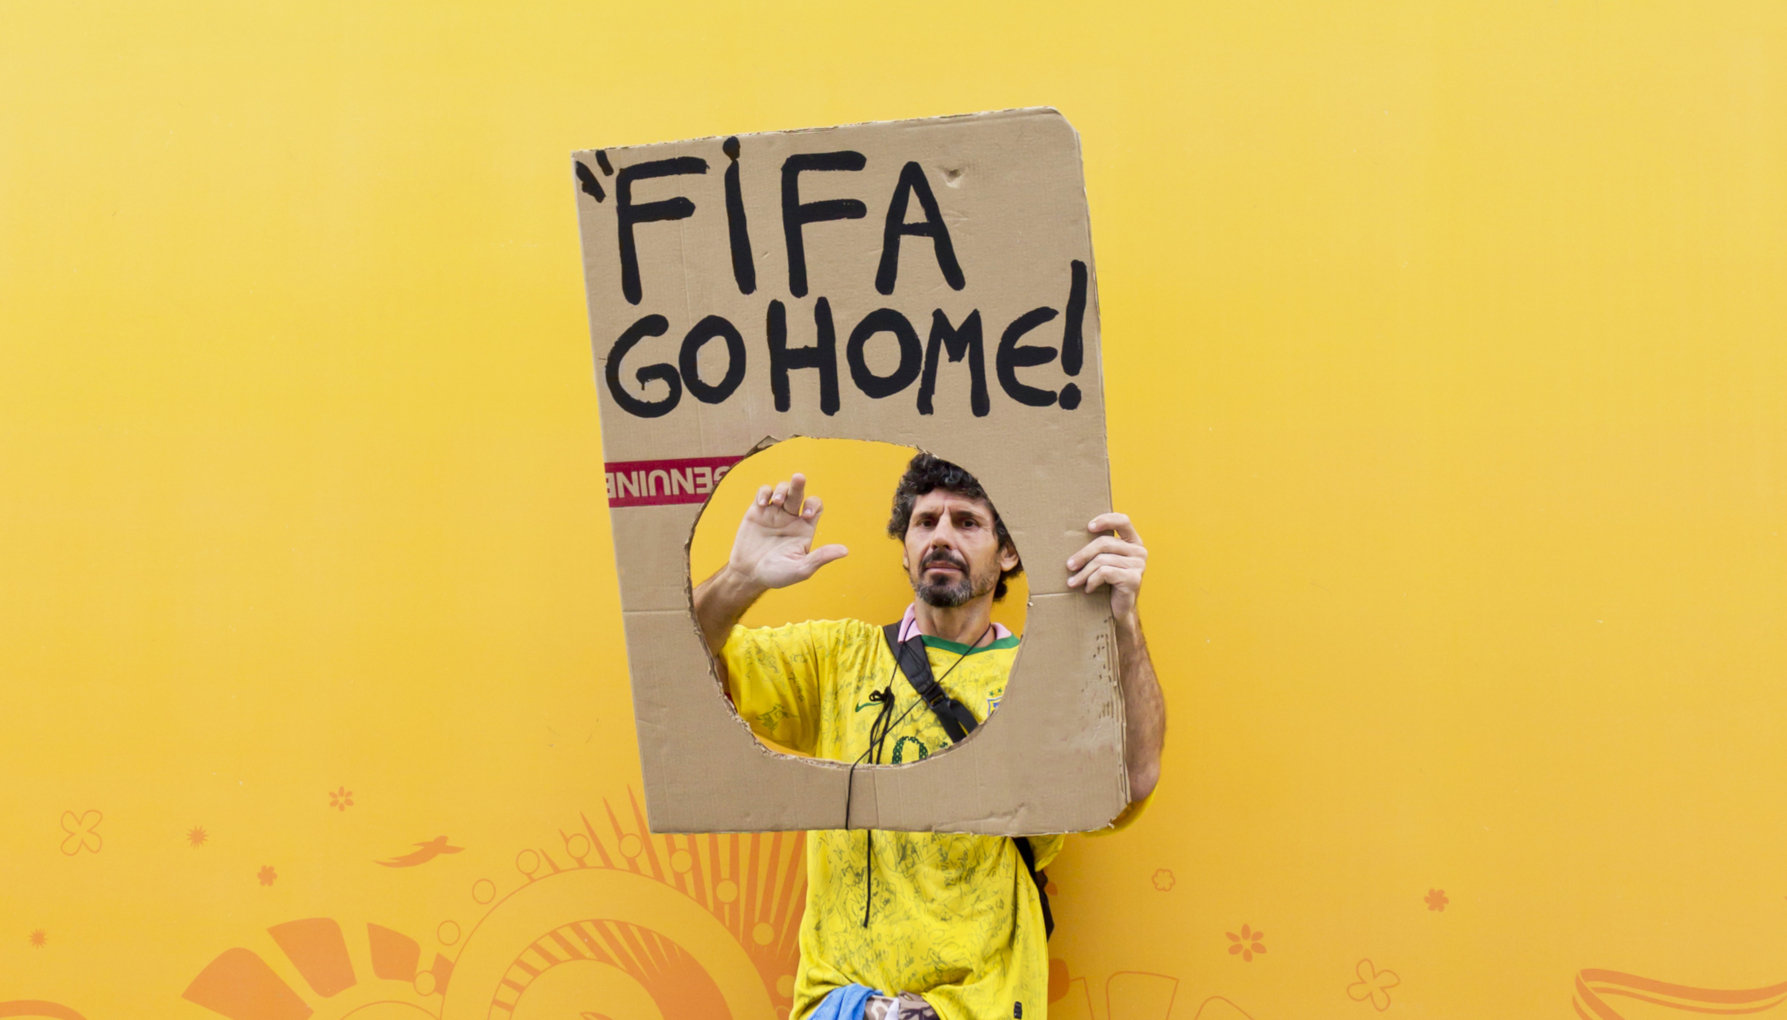 Η FIFA θέλει Μουντιάλ κάθε 2 χρόνια: Οι ποδοσφαιριστές έχουν δικαίωμα να διαμαρτυρηθούν;